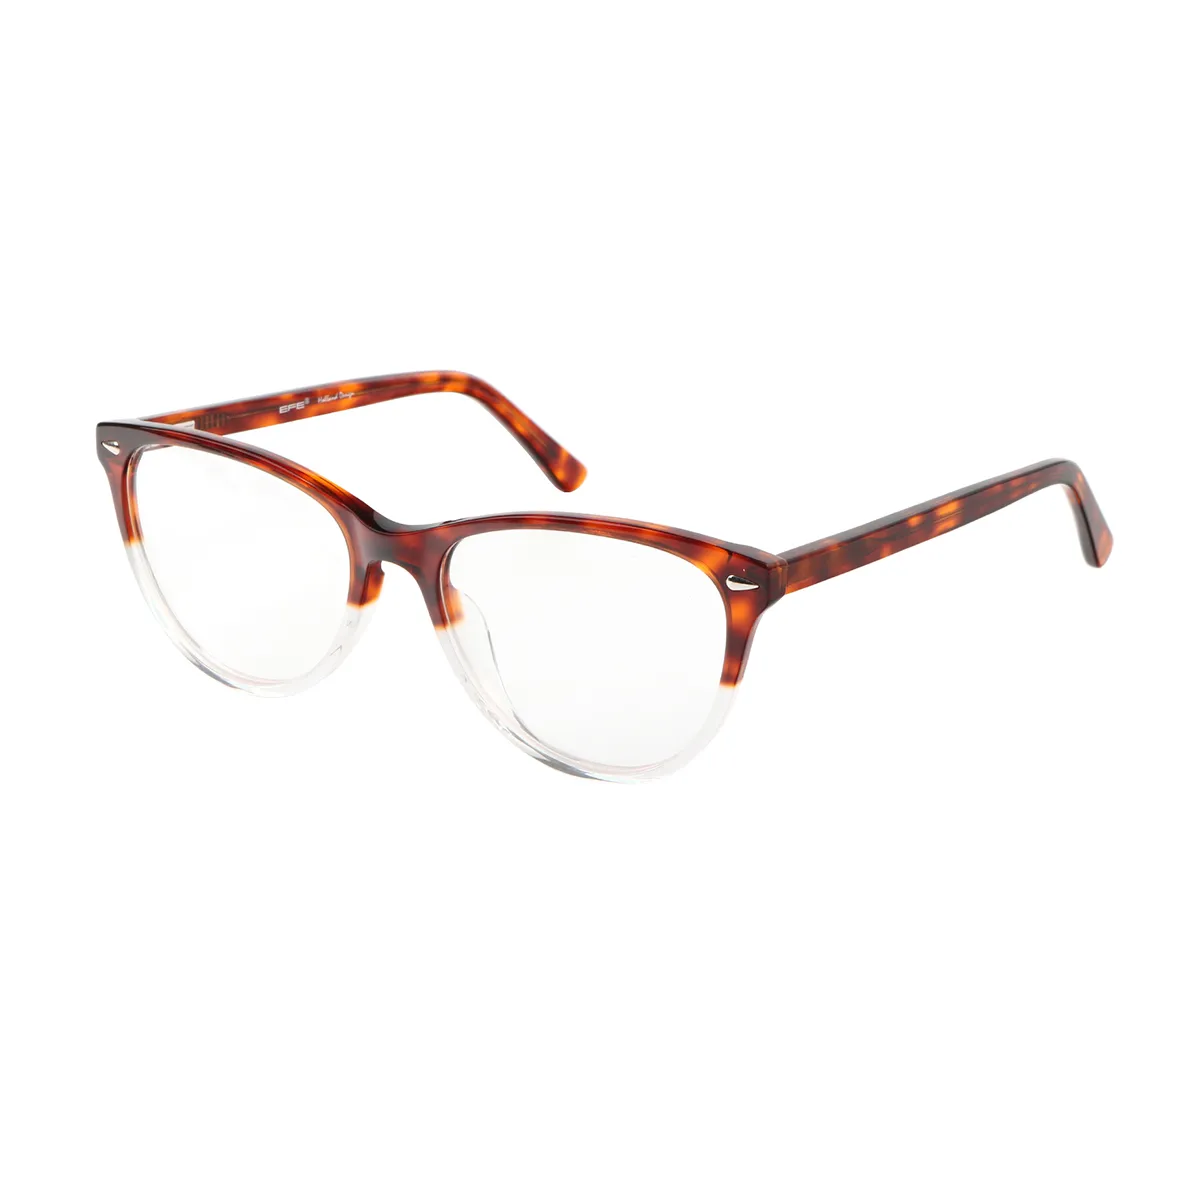 Classic Oval Black-Tortoiseshell Glasses for Women